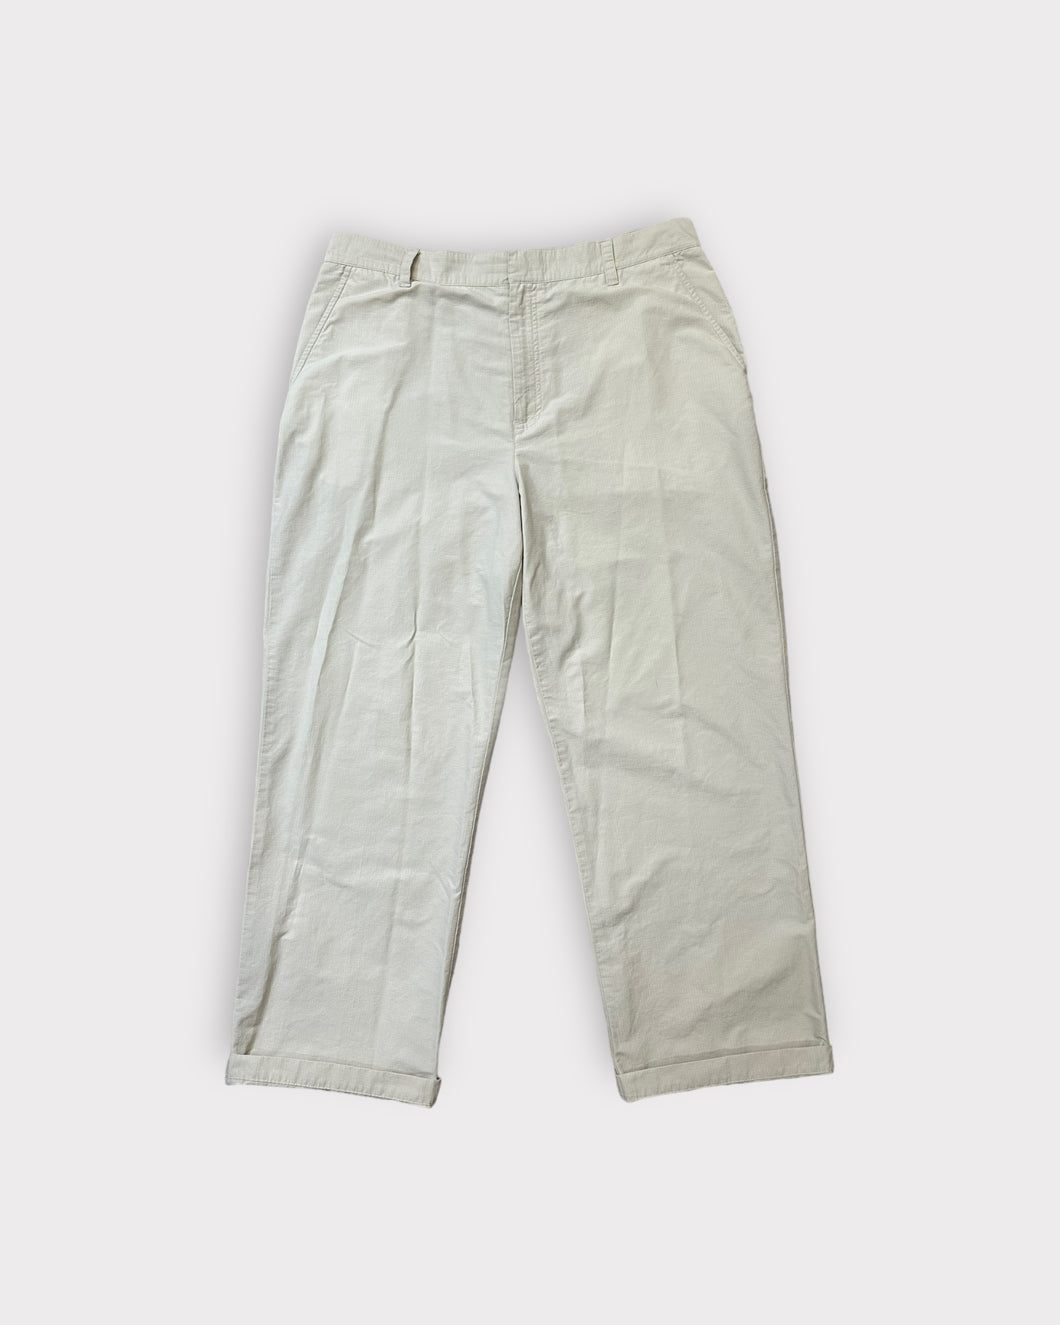 Ralph Lauren Beige Pants (XL)